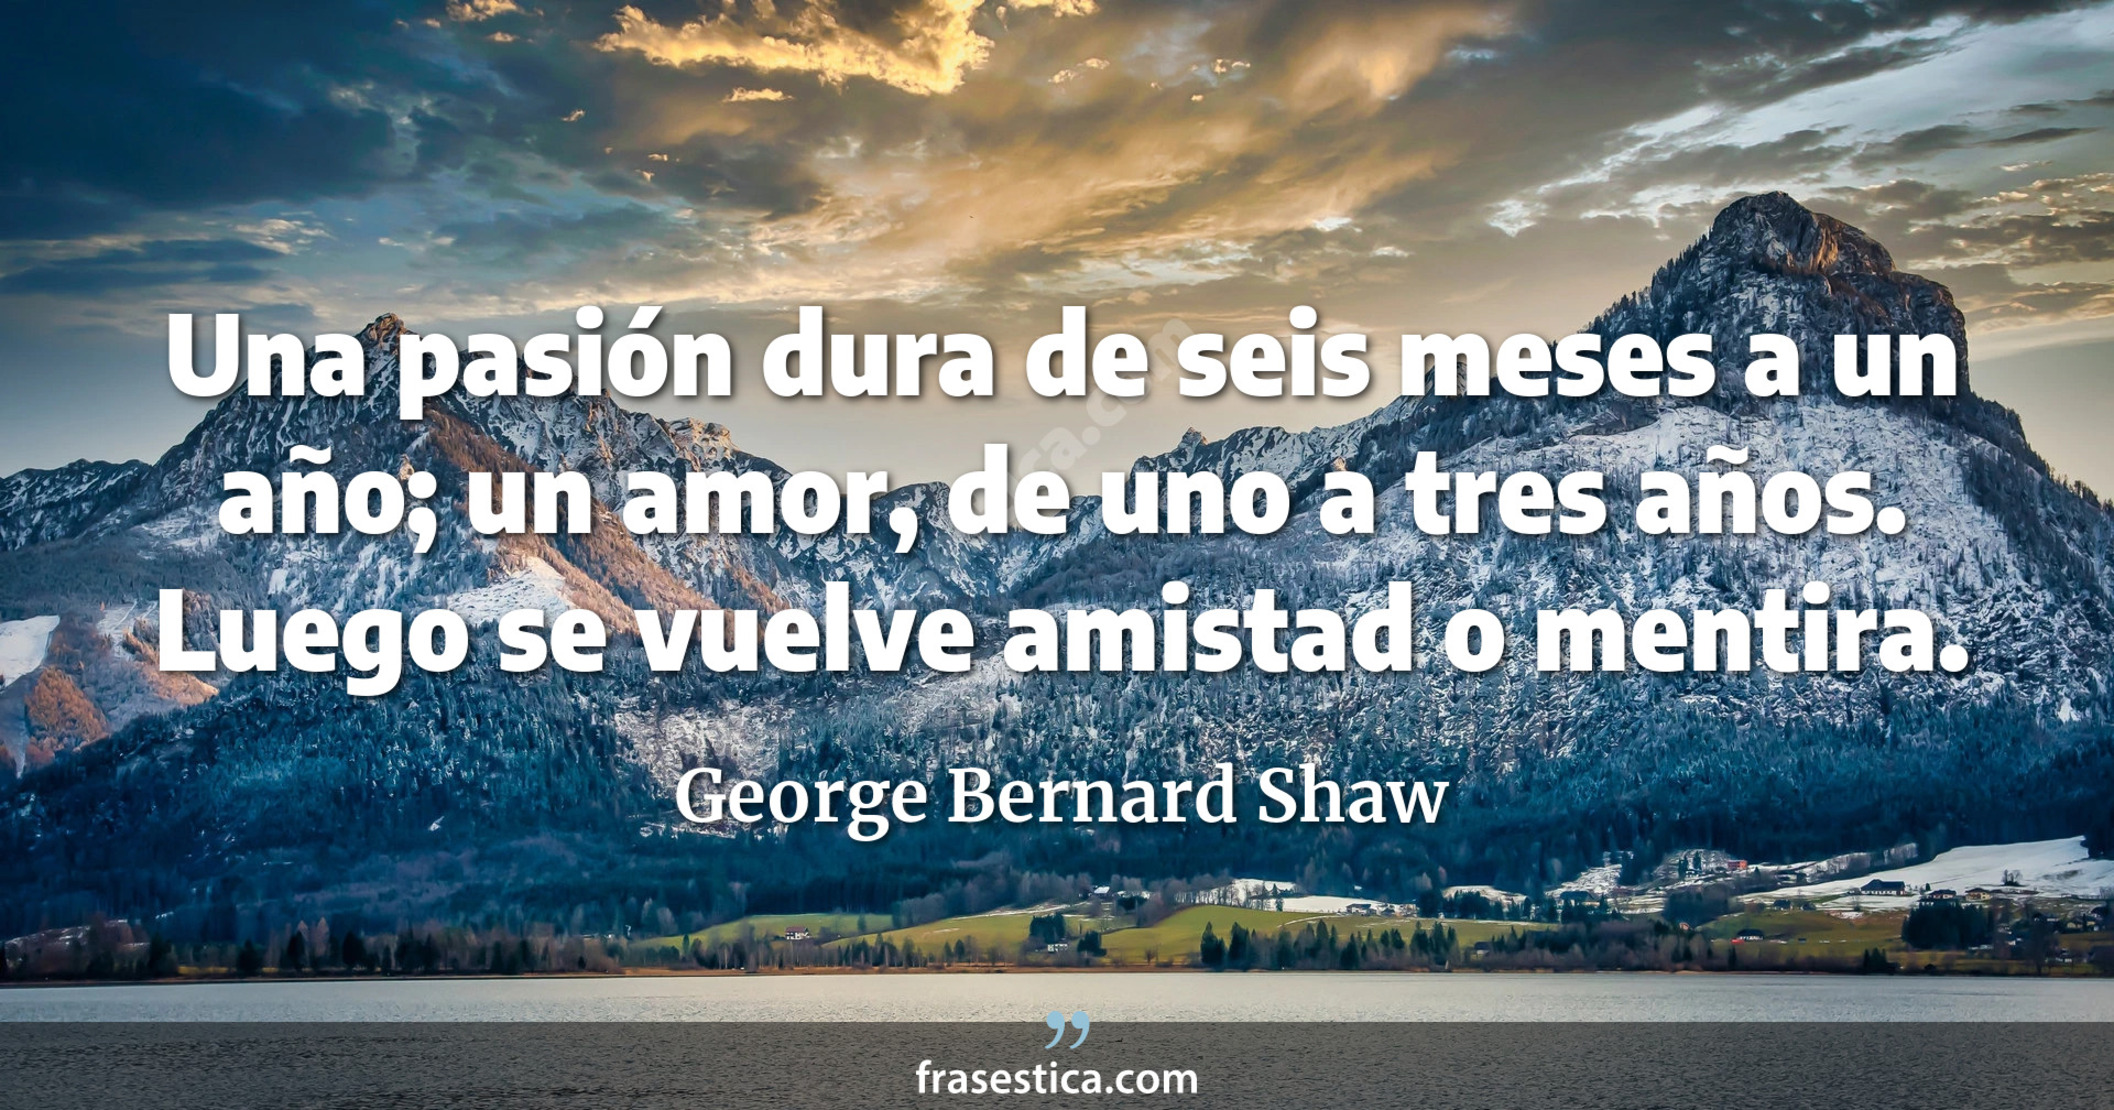 Una pasión dura de seis meses a un año; un amor, de uno a tres años. Luego se vuelve amistad o mentira. - George Bernard Shaw